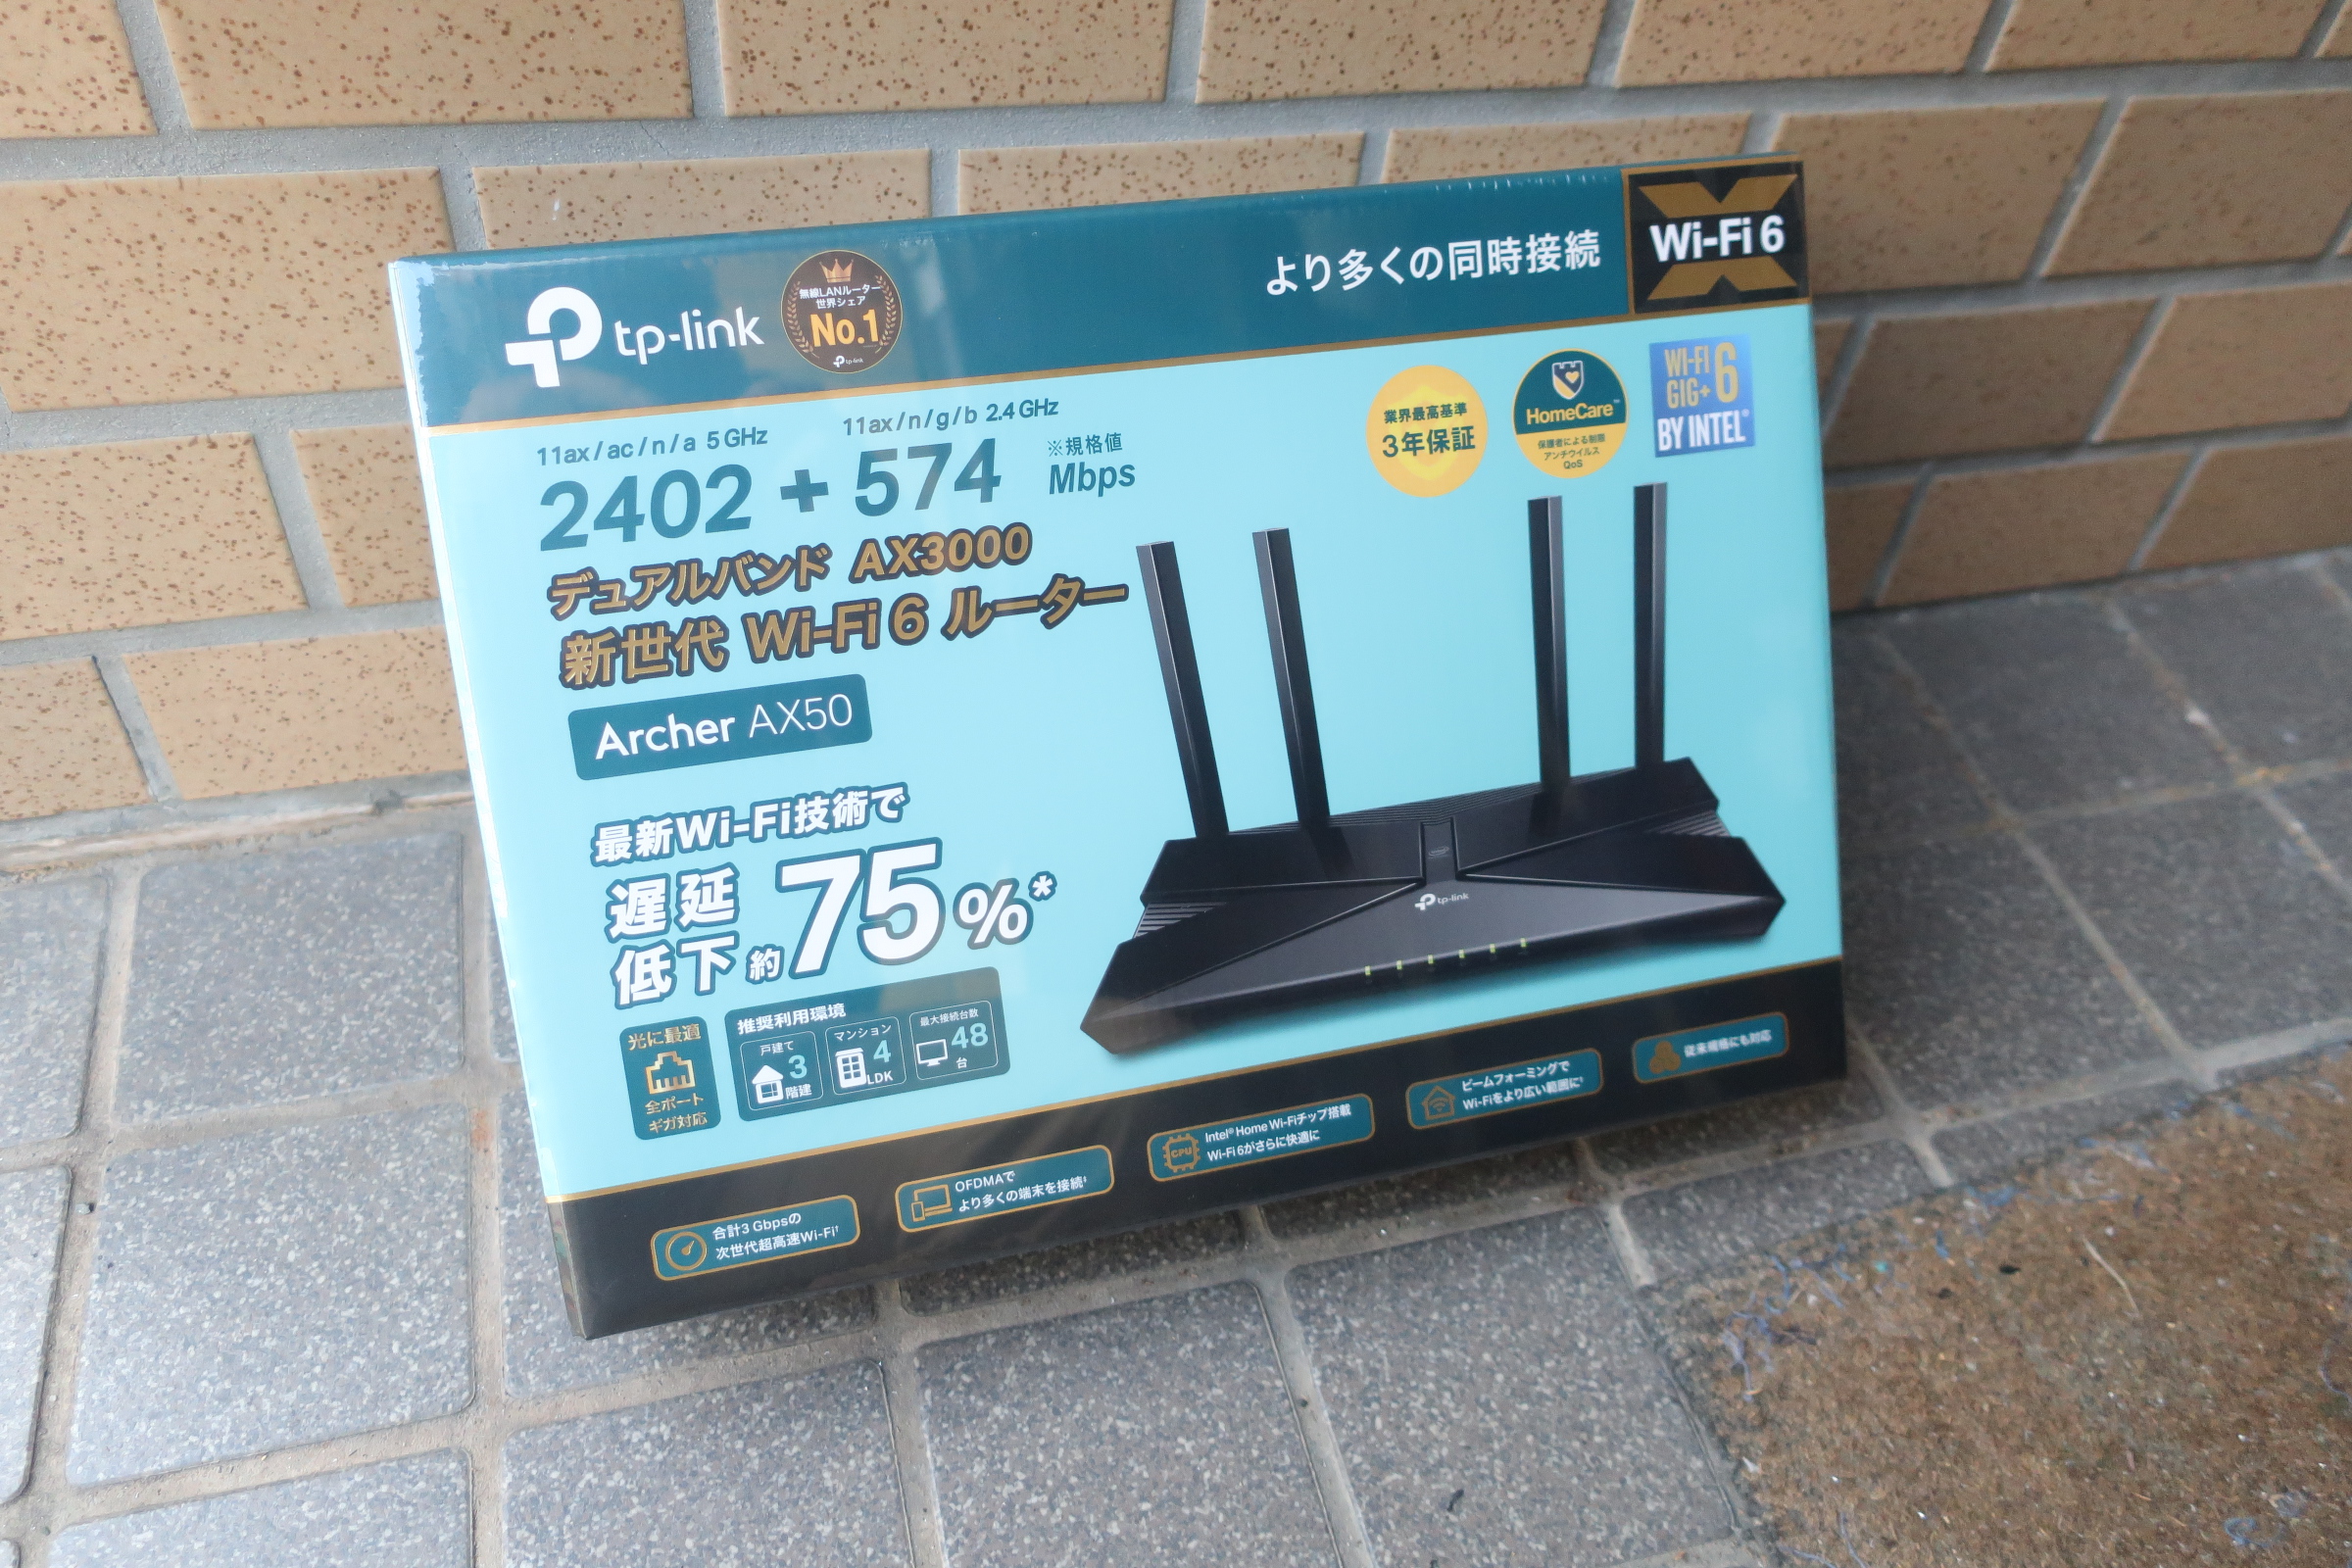 TP-Link WiFi 無線LAN ルーター Wi-Fi6 11AX AX3000 2402 + 